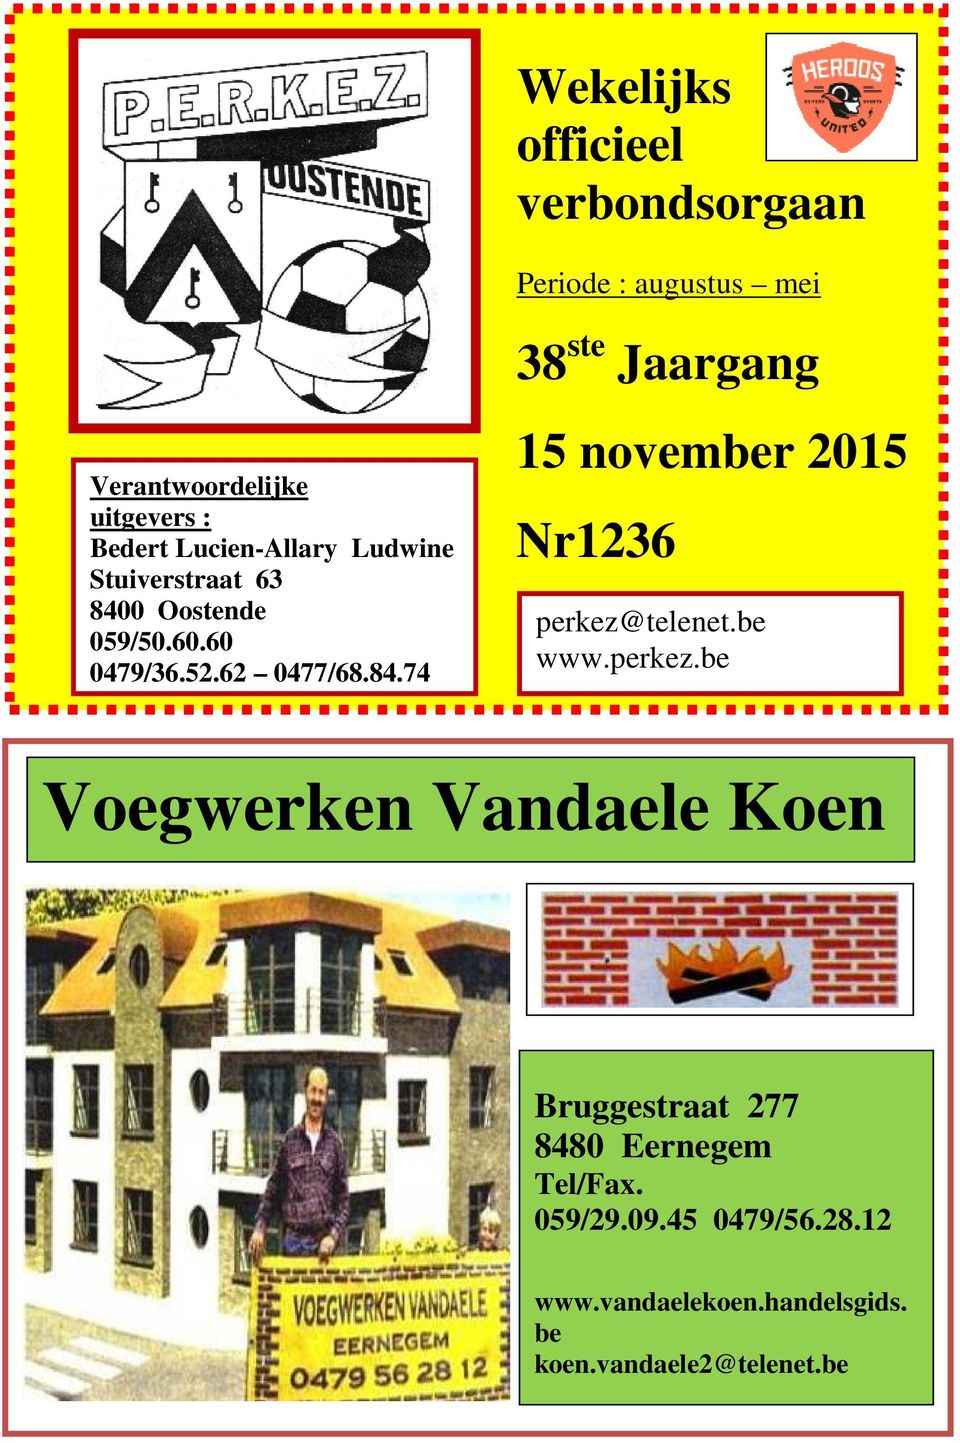 be www.perkez.be Voegwerken Vandaele Koen Bruggestraat 277 8480 Eernegem Tel/Fax. 059/29.09.45 0479/56.